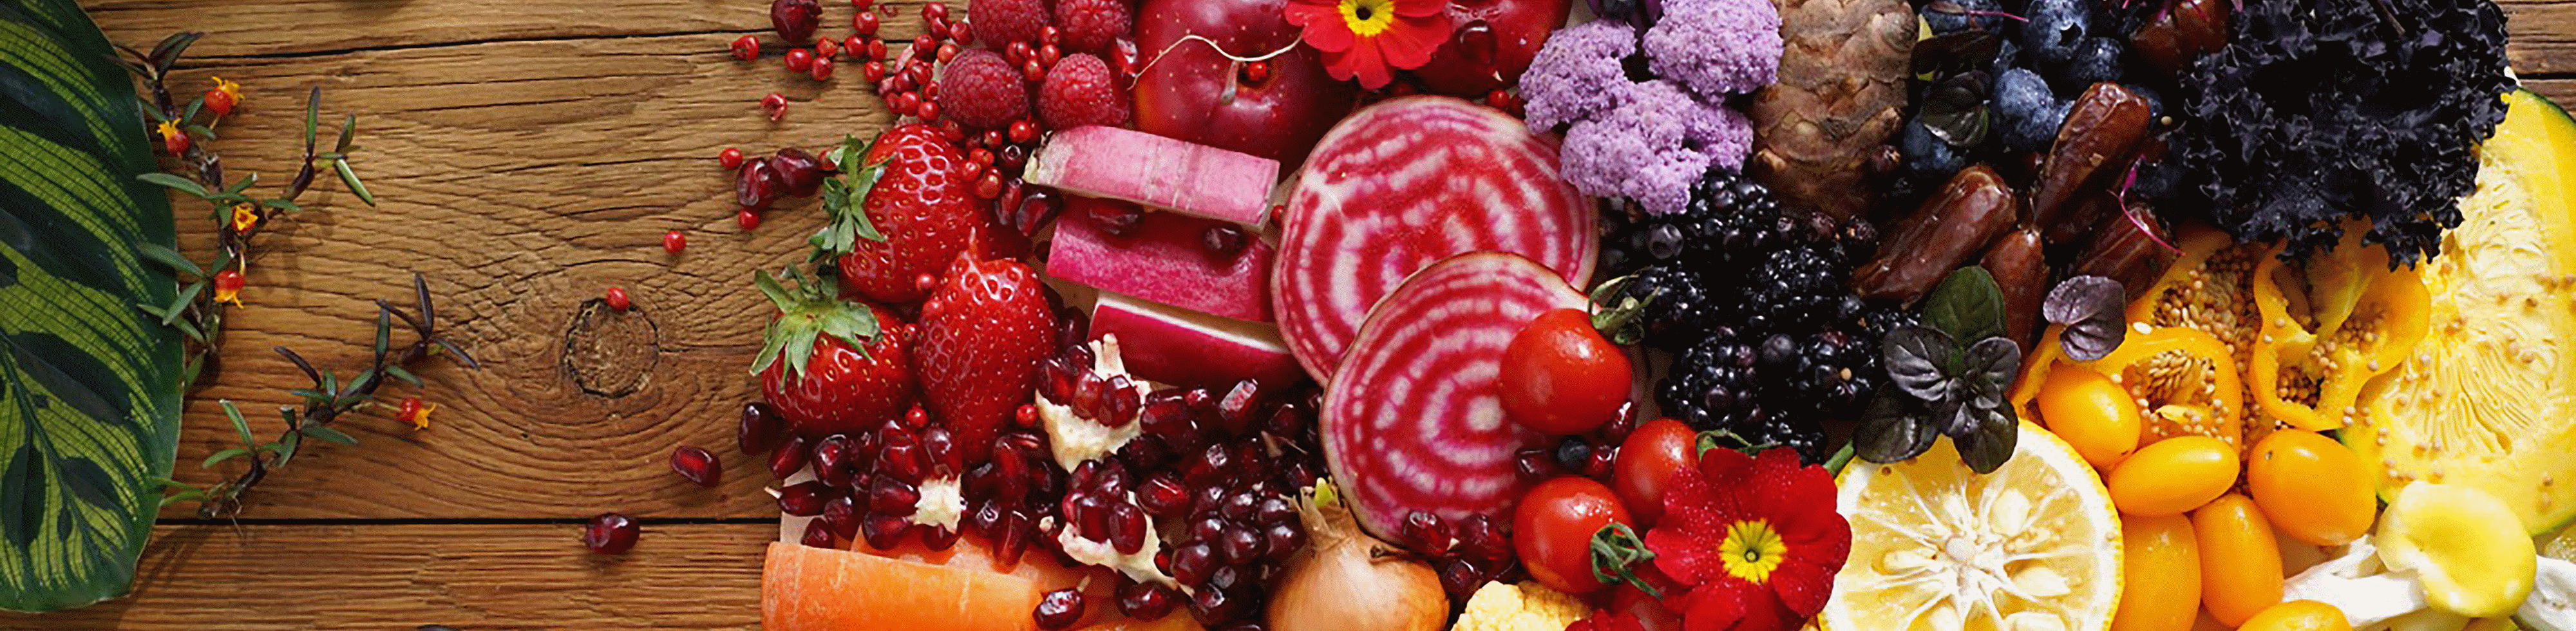 Image de légumes et de fruits colorés capturée à l'aide de l'objectif, avec une haute résolution dans les moindres recoins